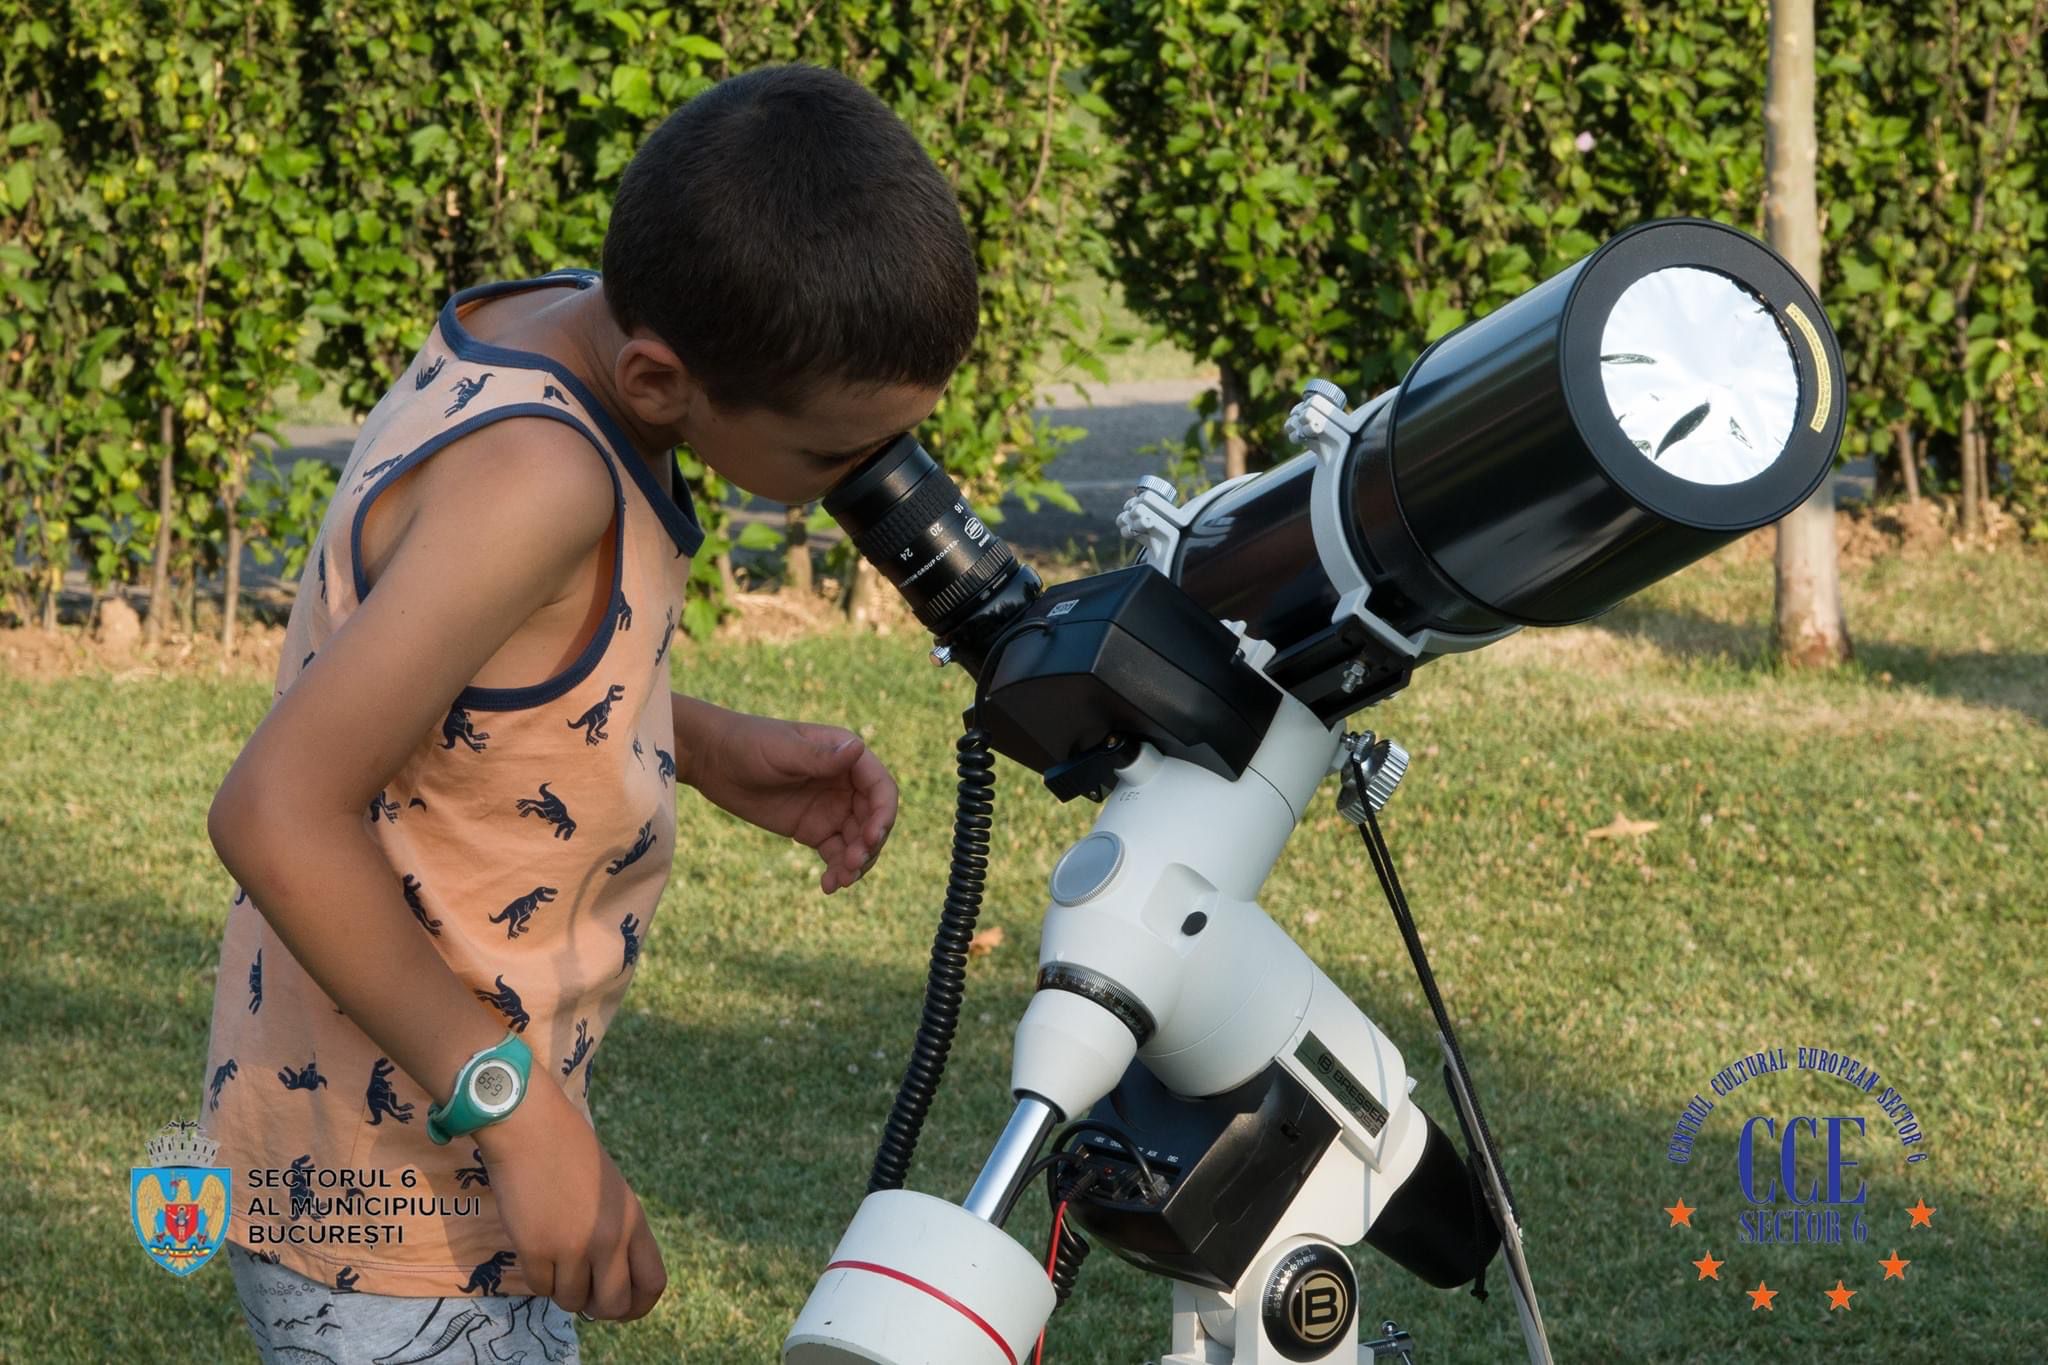 Festival Național de Astronomie, Știință și Educație în Parcul Crângași